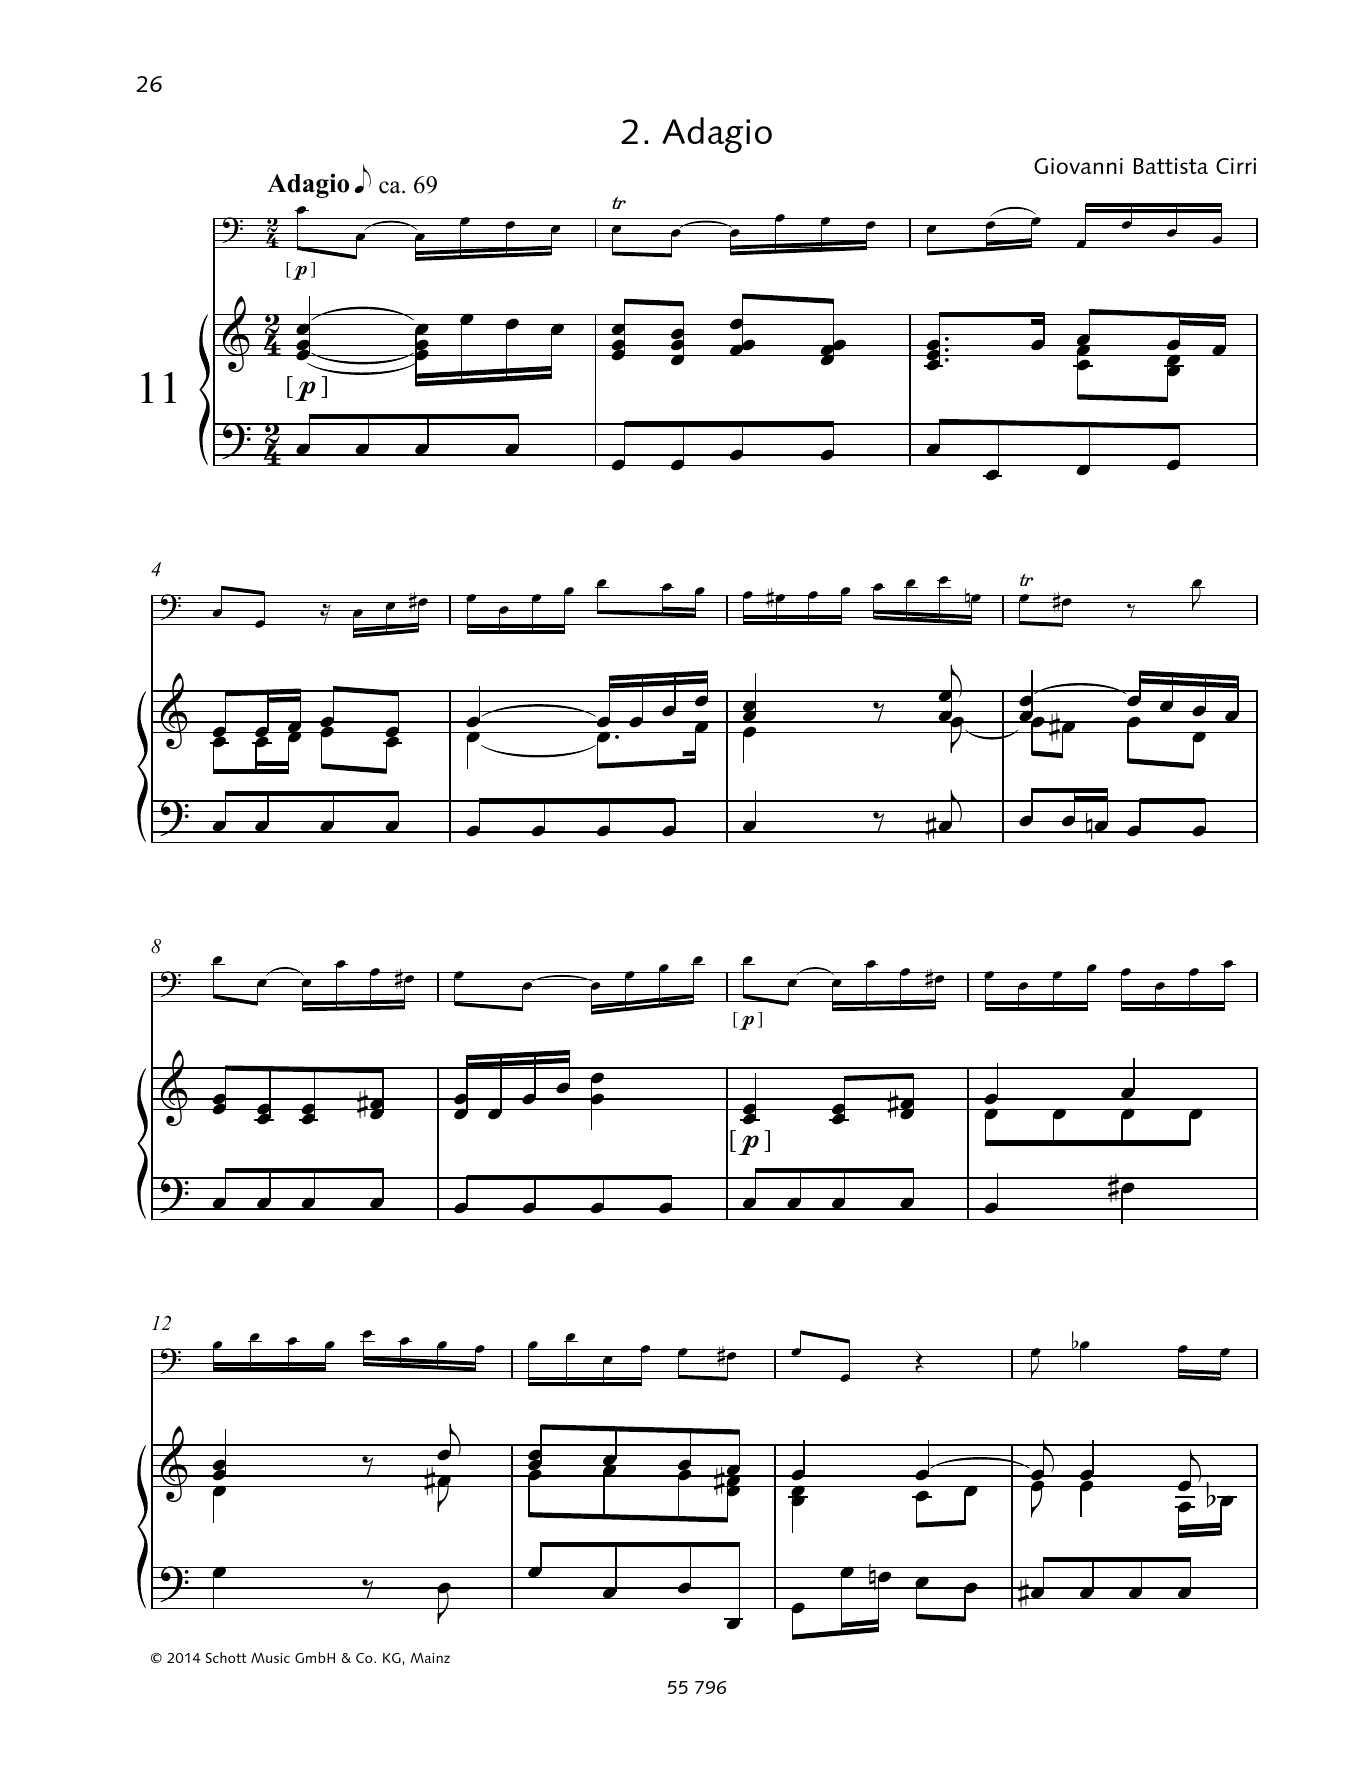 Download Giovanni Battista Cirri Adagio Sheet Music